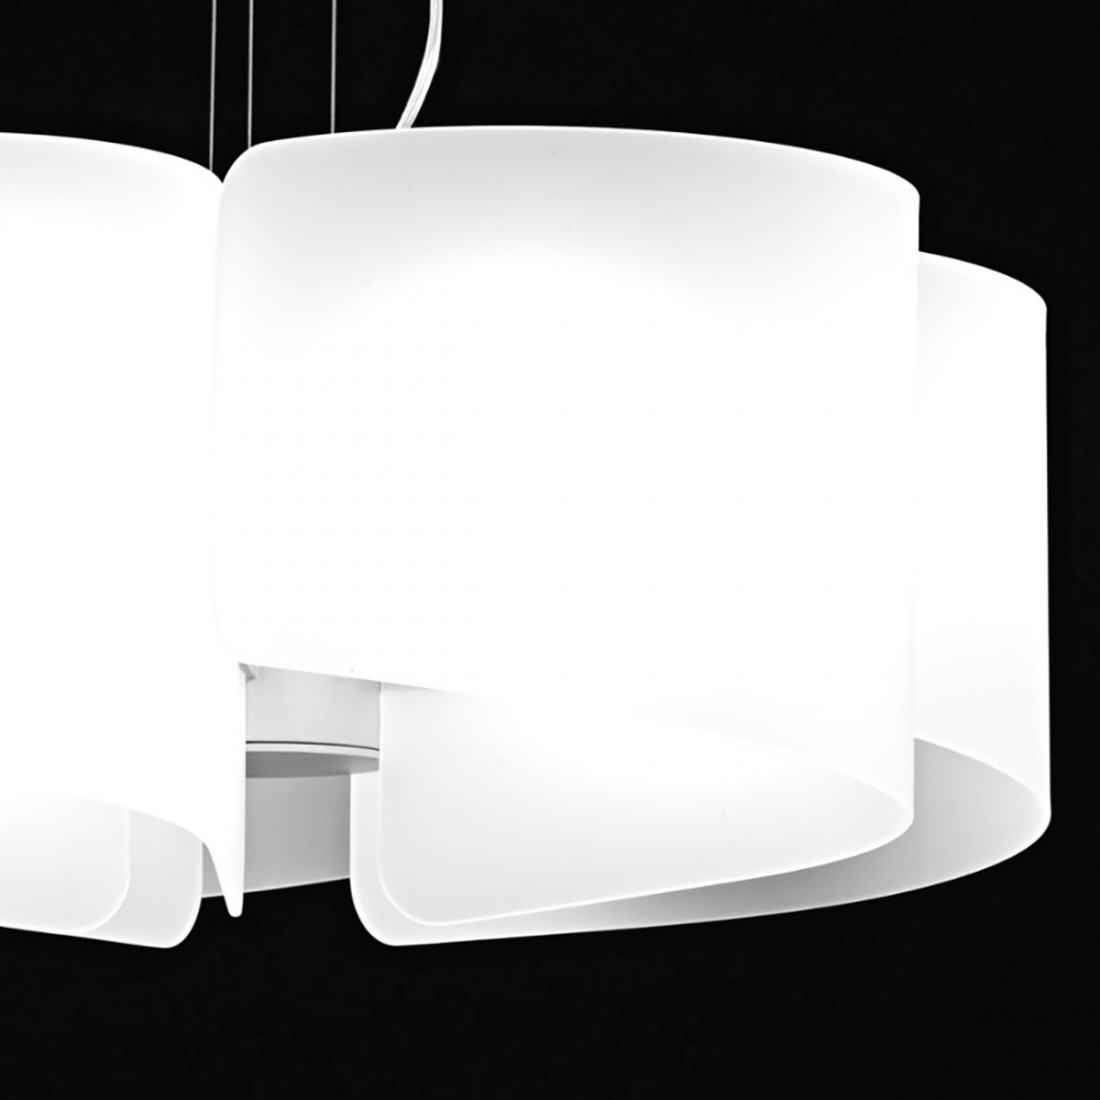 Runder weißer Glaskronleuchter, Helix, moderne 5 Lichter E27 LED